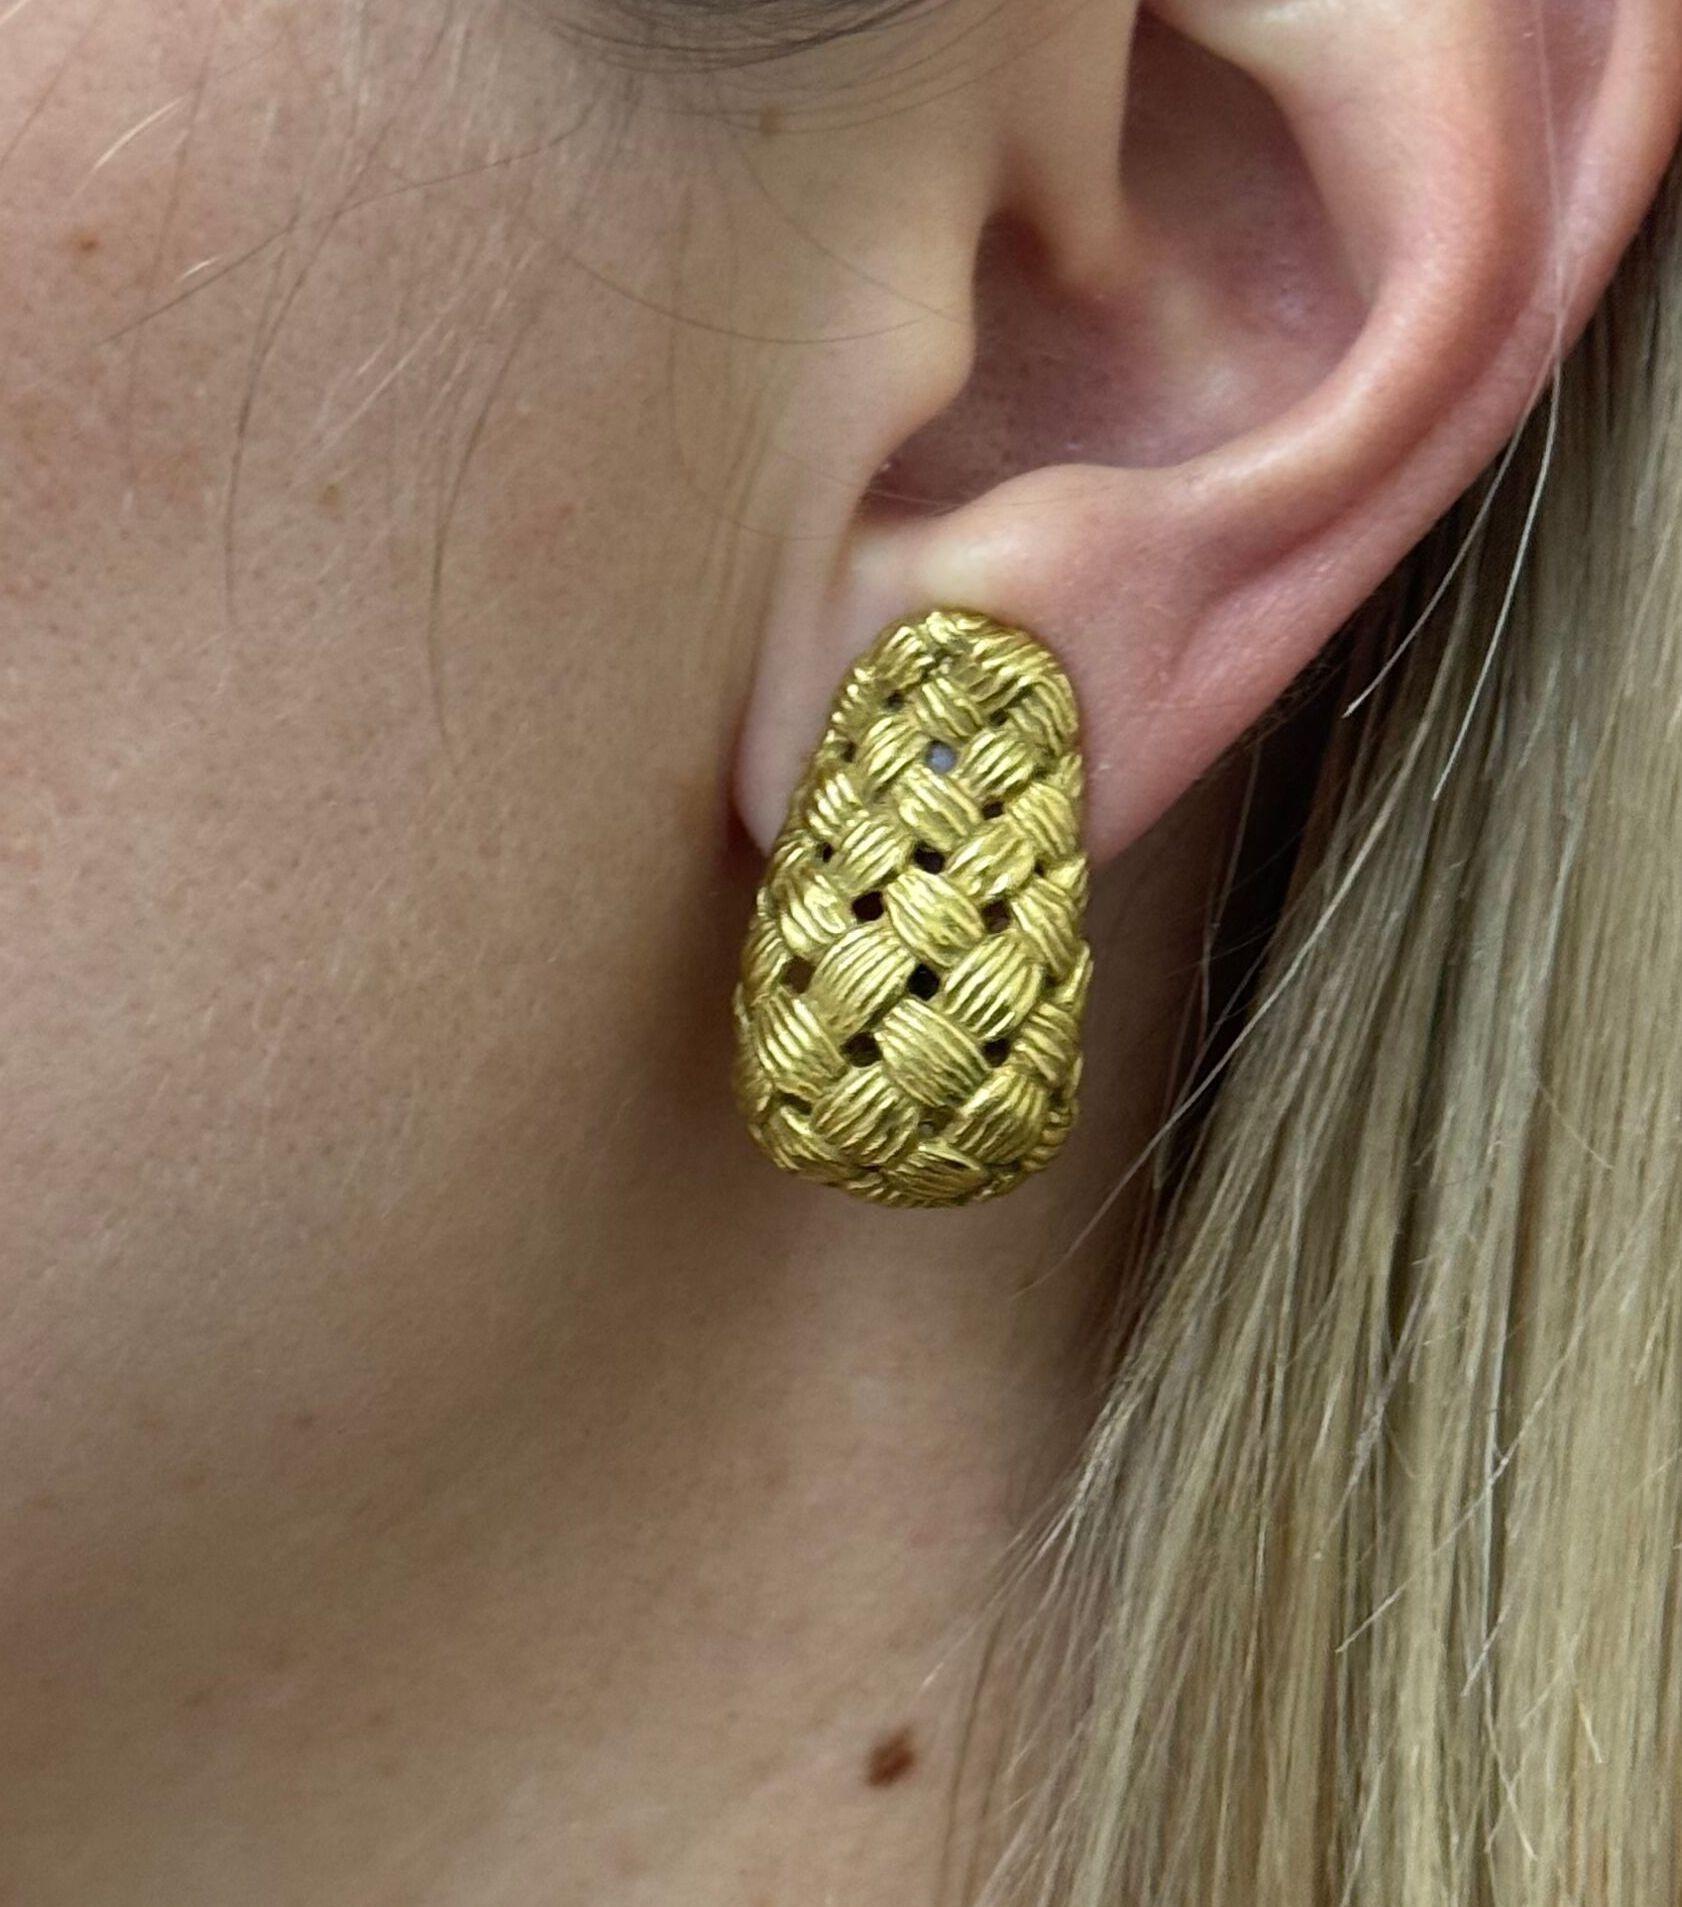 1987 vintage Angela Cummings earrings in 18k gold, featuring basketweave design. The earrings measure 30mm x 20mm. Marked 1987, 18k, Cummings. Weight - 25.5 grams. 